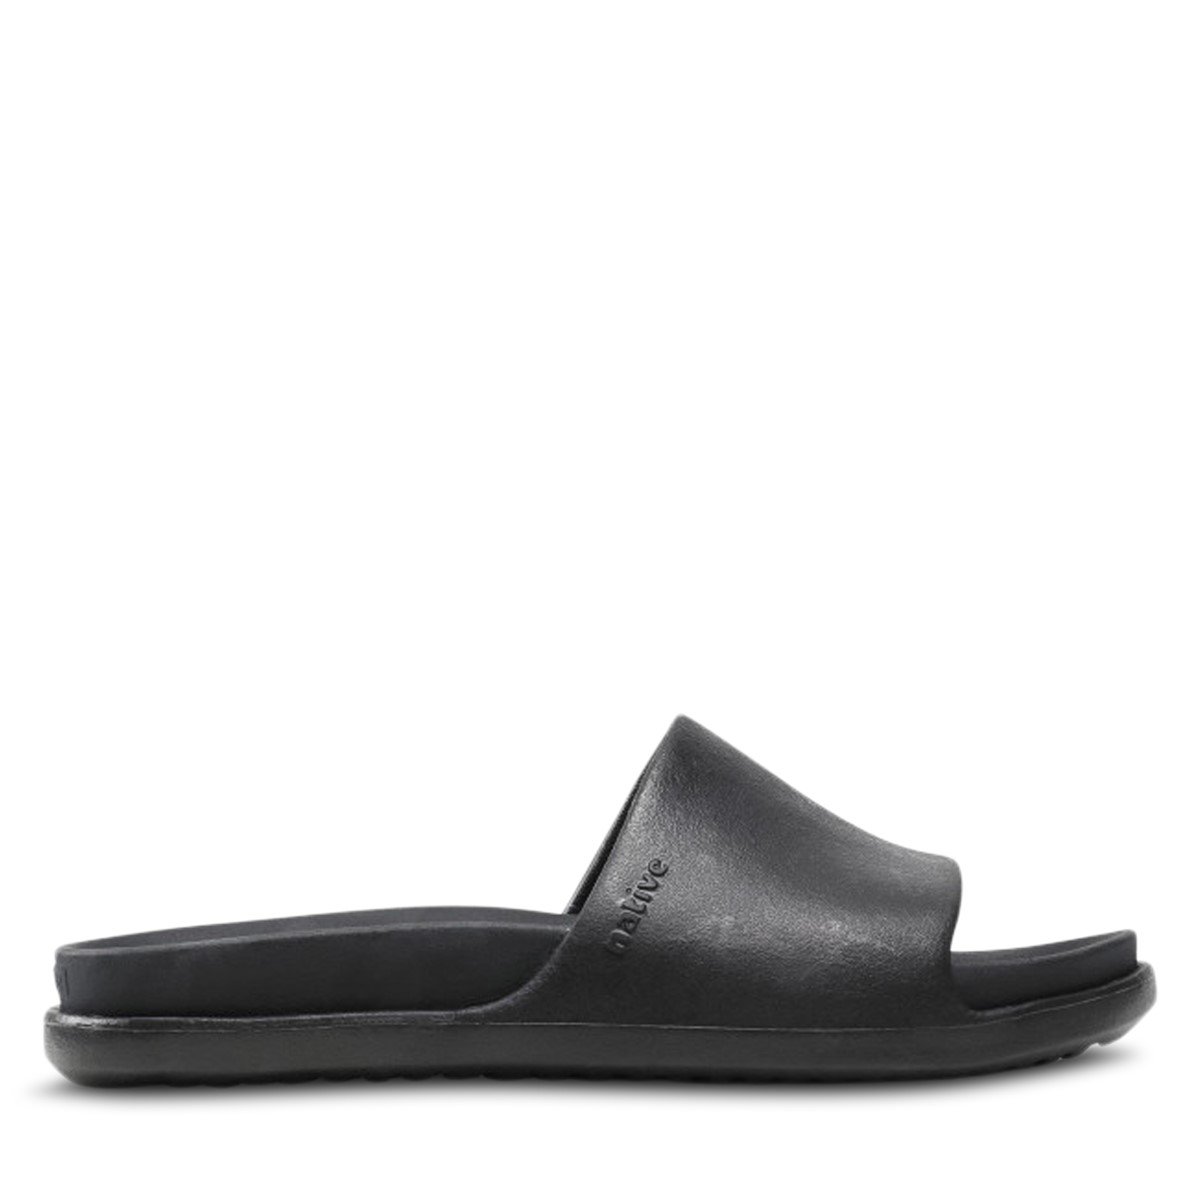 Spencer LX Slide Sandals in Black